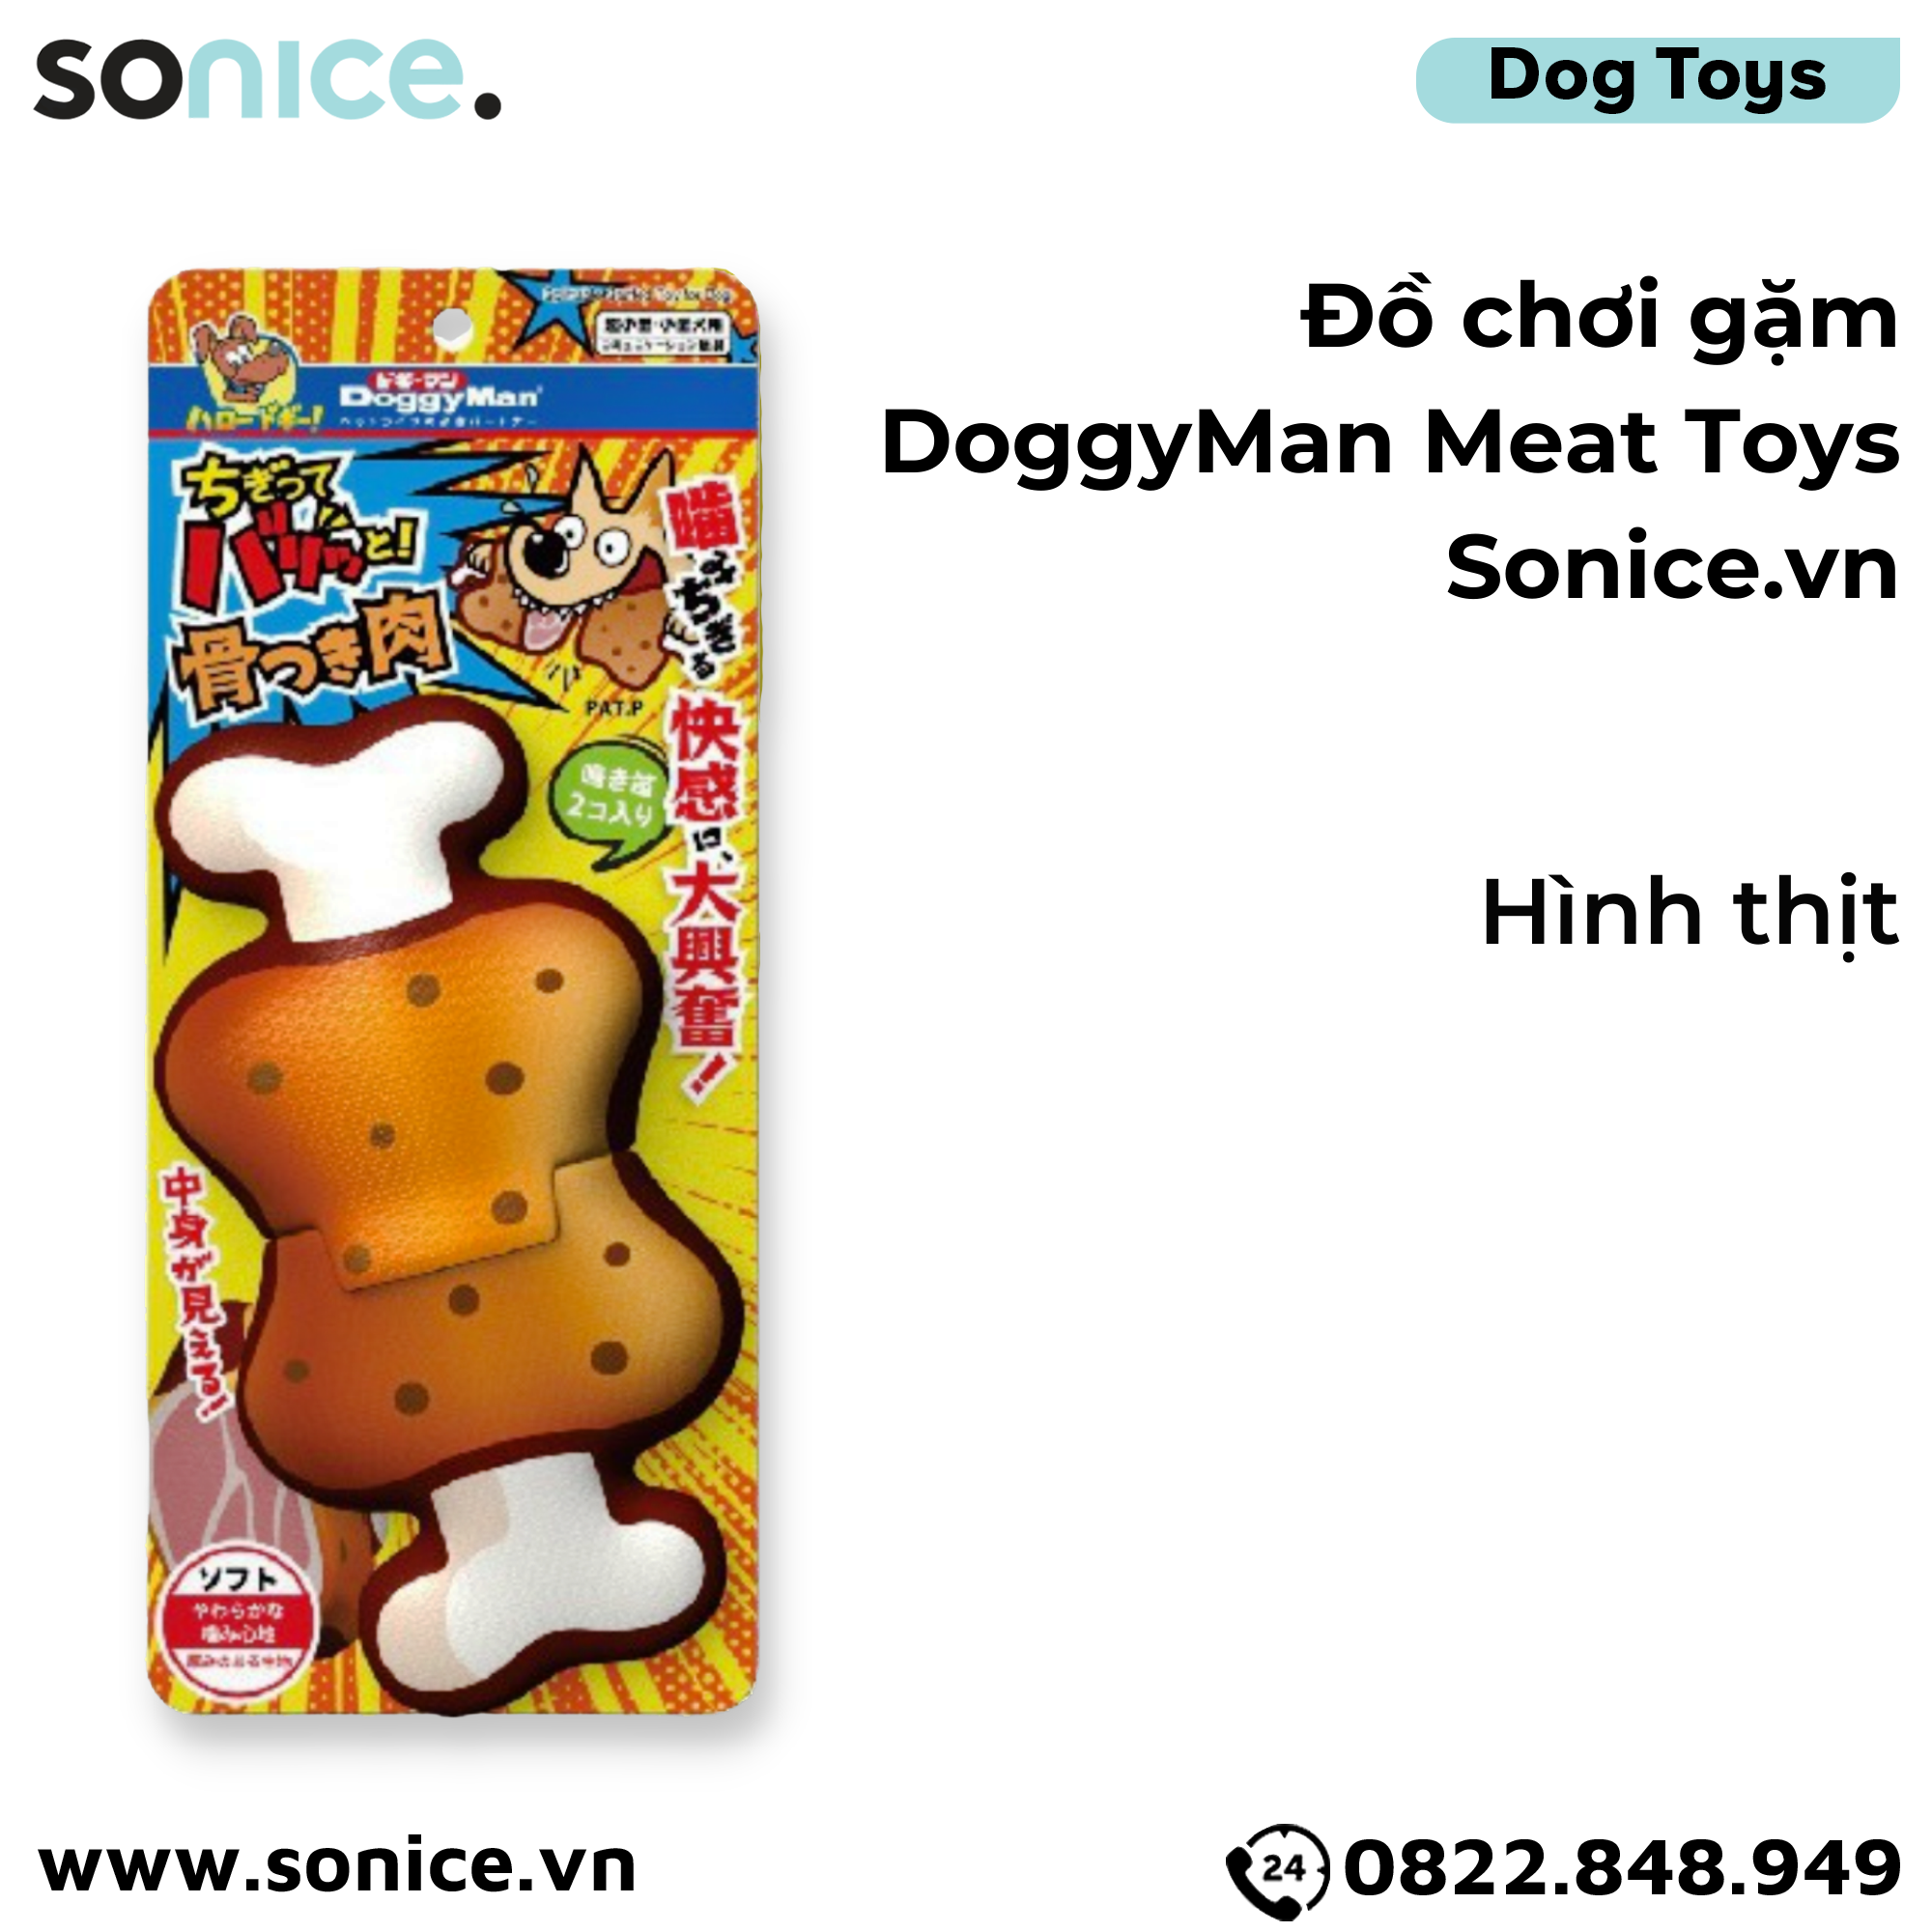  Đồ chơi gặm DoggyMan Meat Toys - Hình thịt SONICE. 